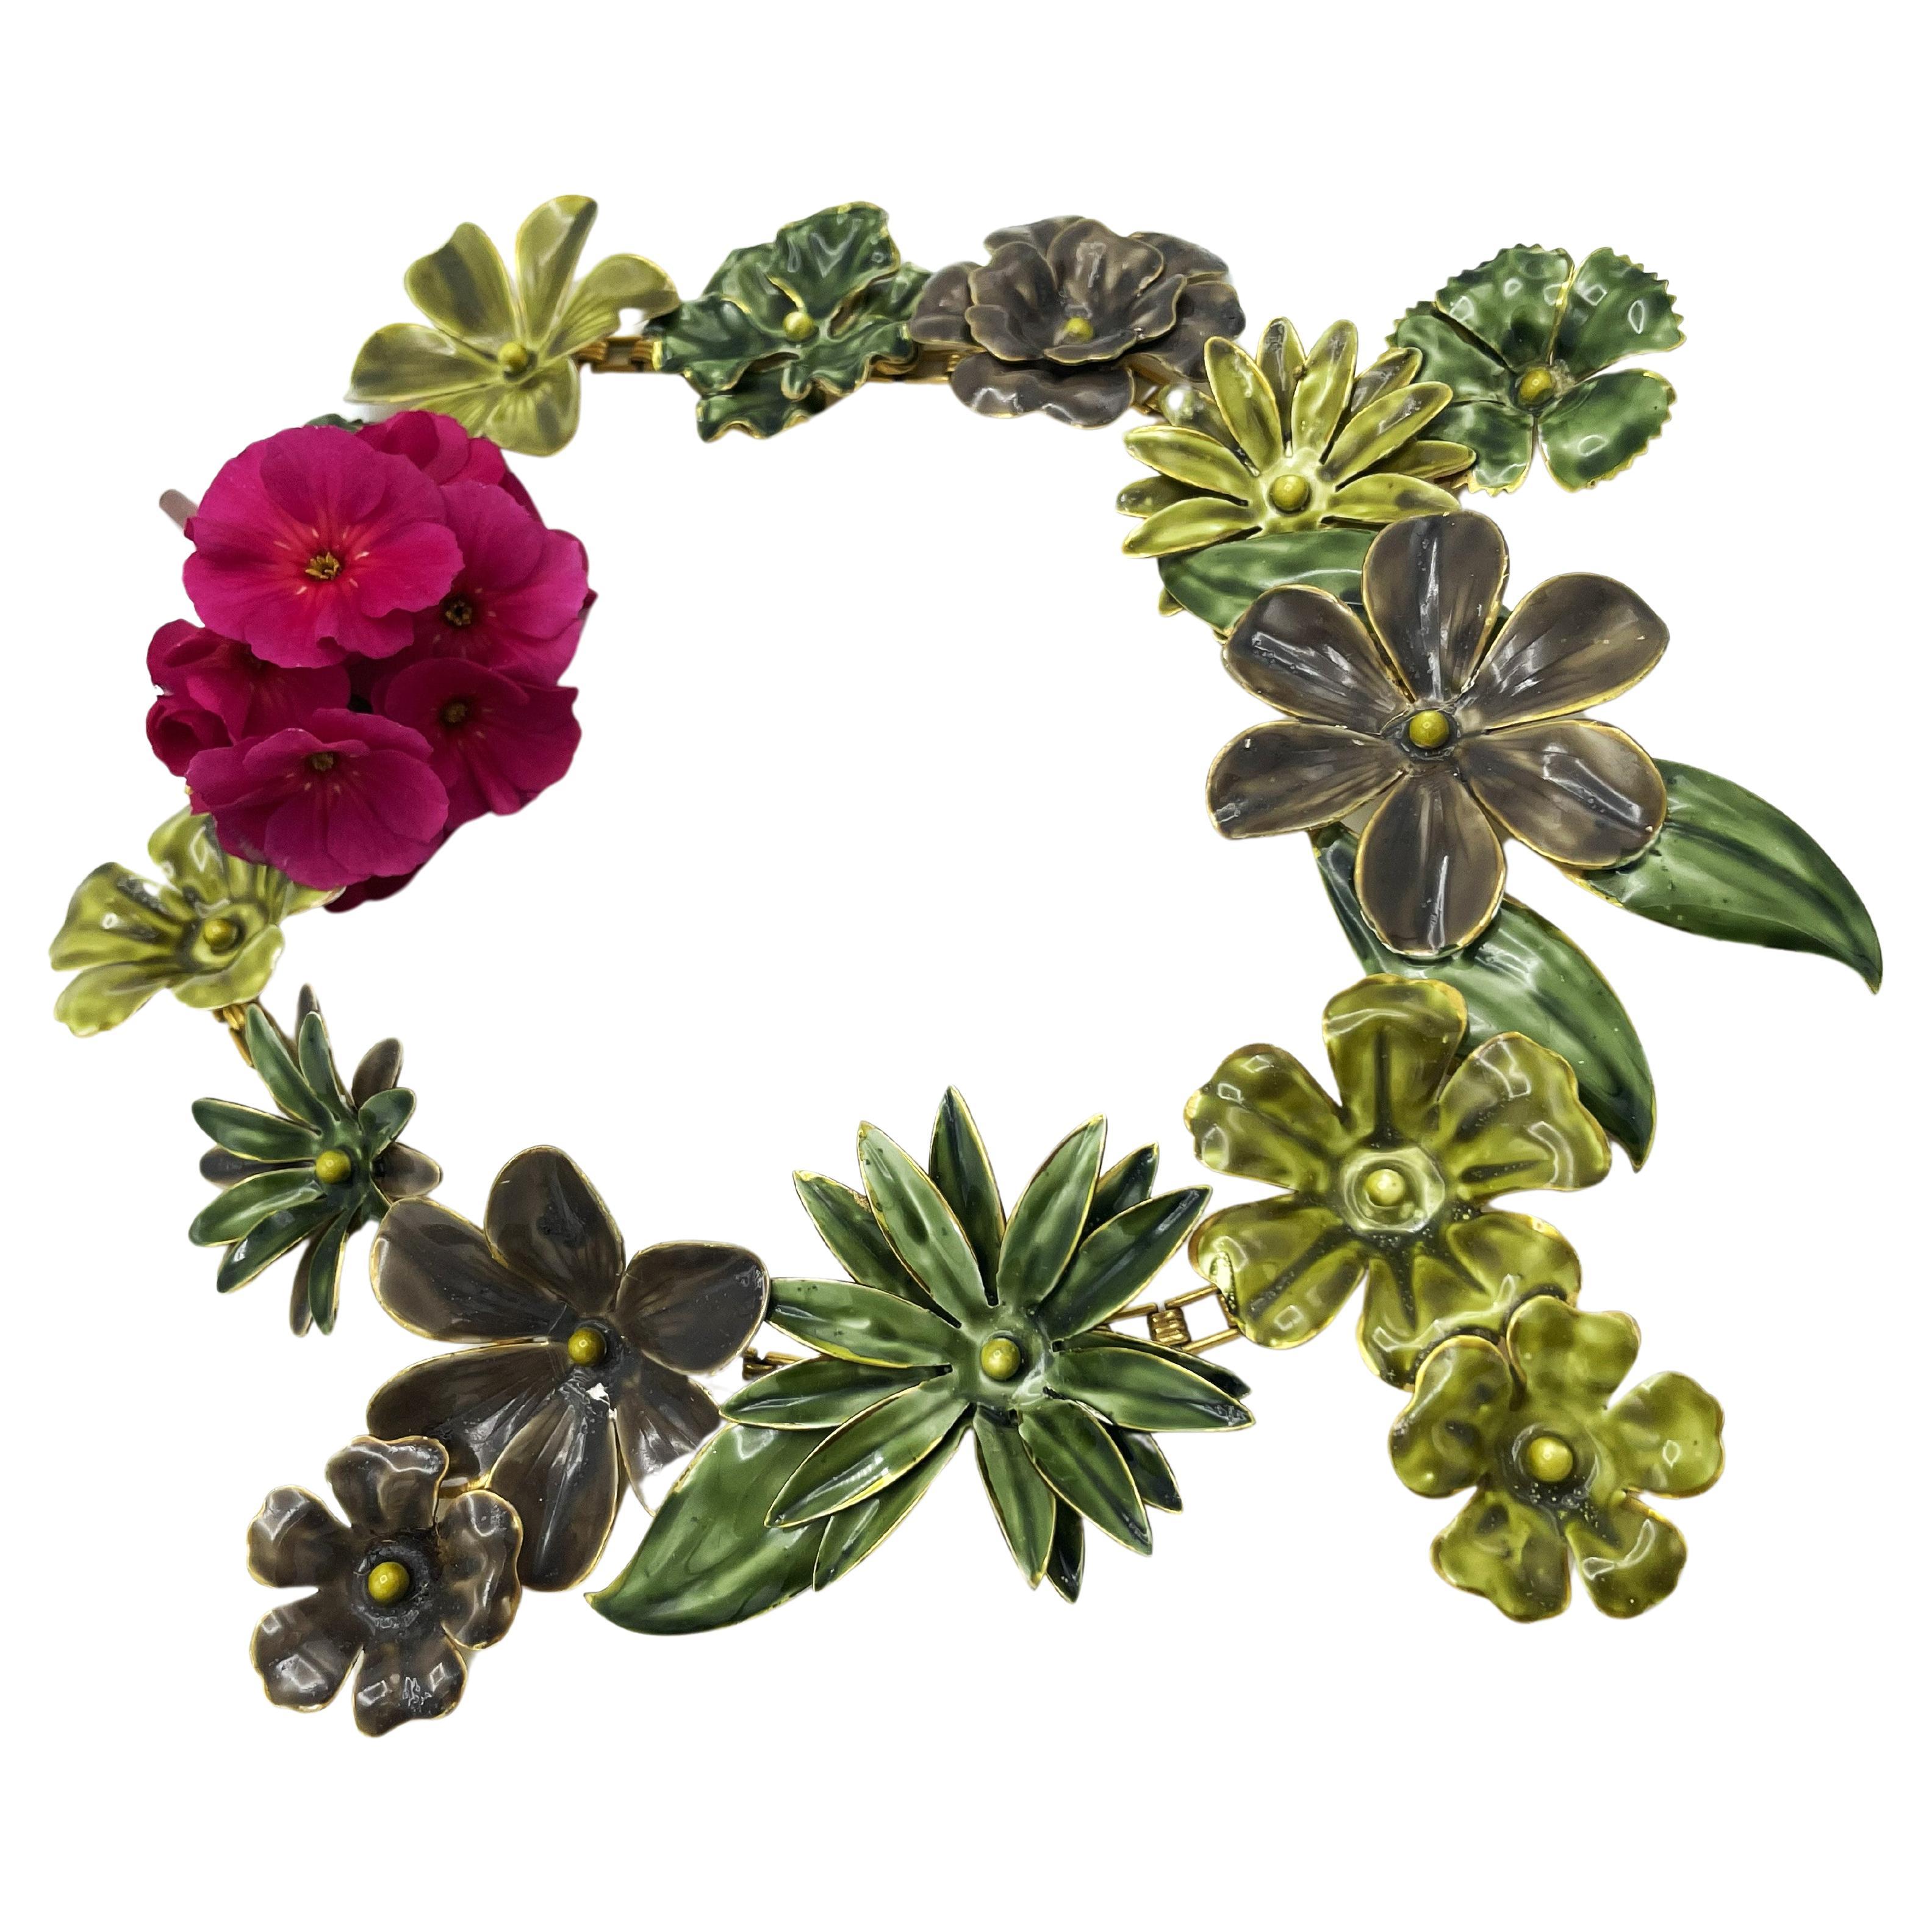 Eine große Hand emaillierte Metall Blume und Blatt Halskette von SANDOR in den 1940er Jahren mit passenden Blumen Ohrclip aus den 1940er Jahren entworfen.
Sandor stellte von Ende der 30er bis Mitte der 70er Jahre hochwertigen handgefertigten Schmuck